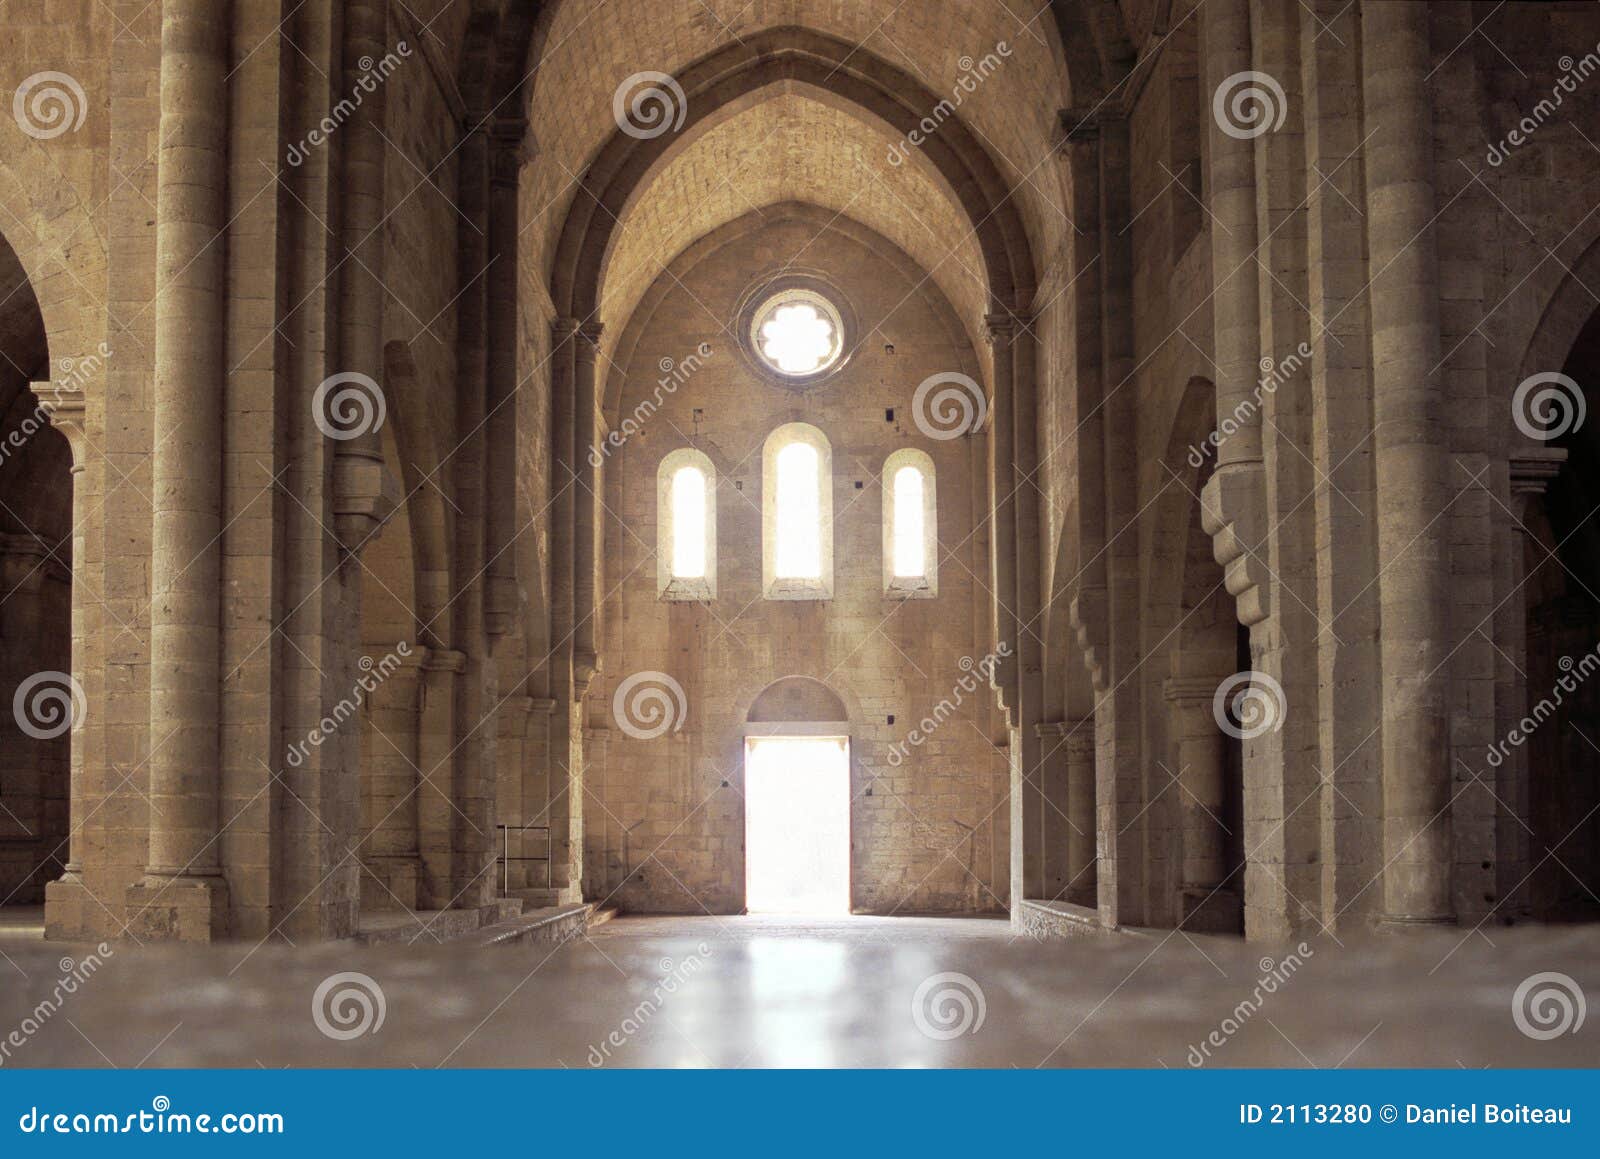 cistercian abbey